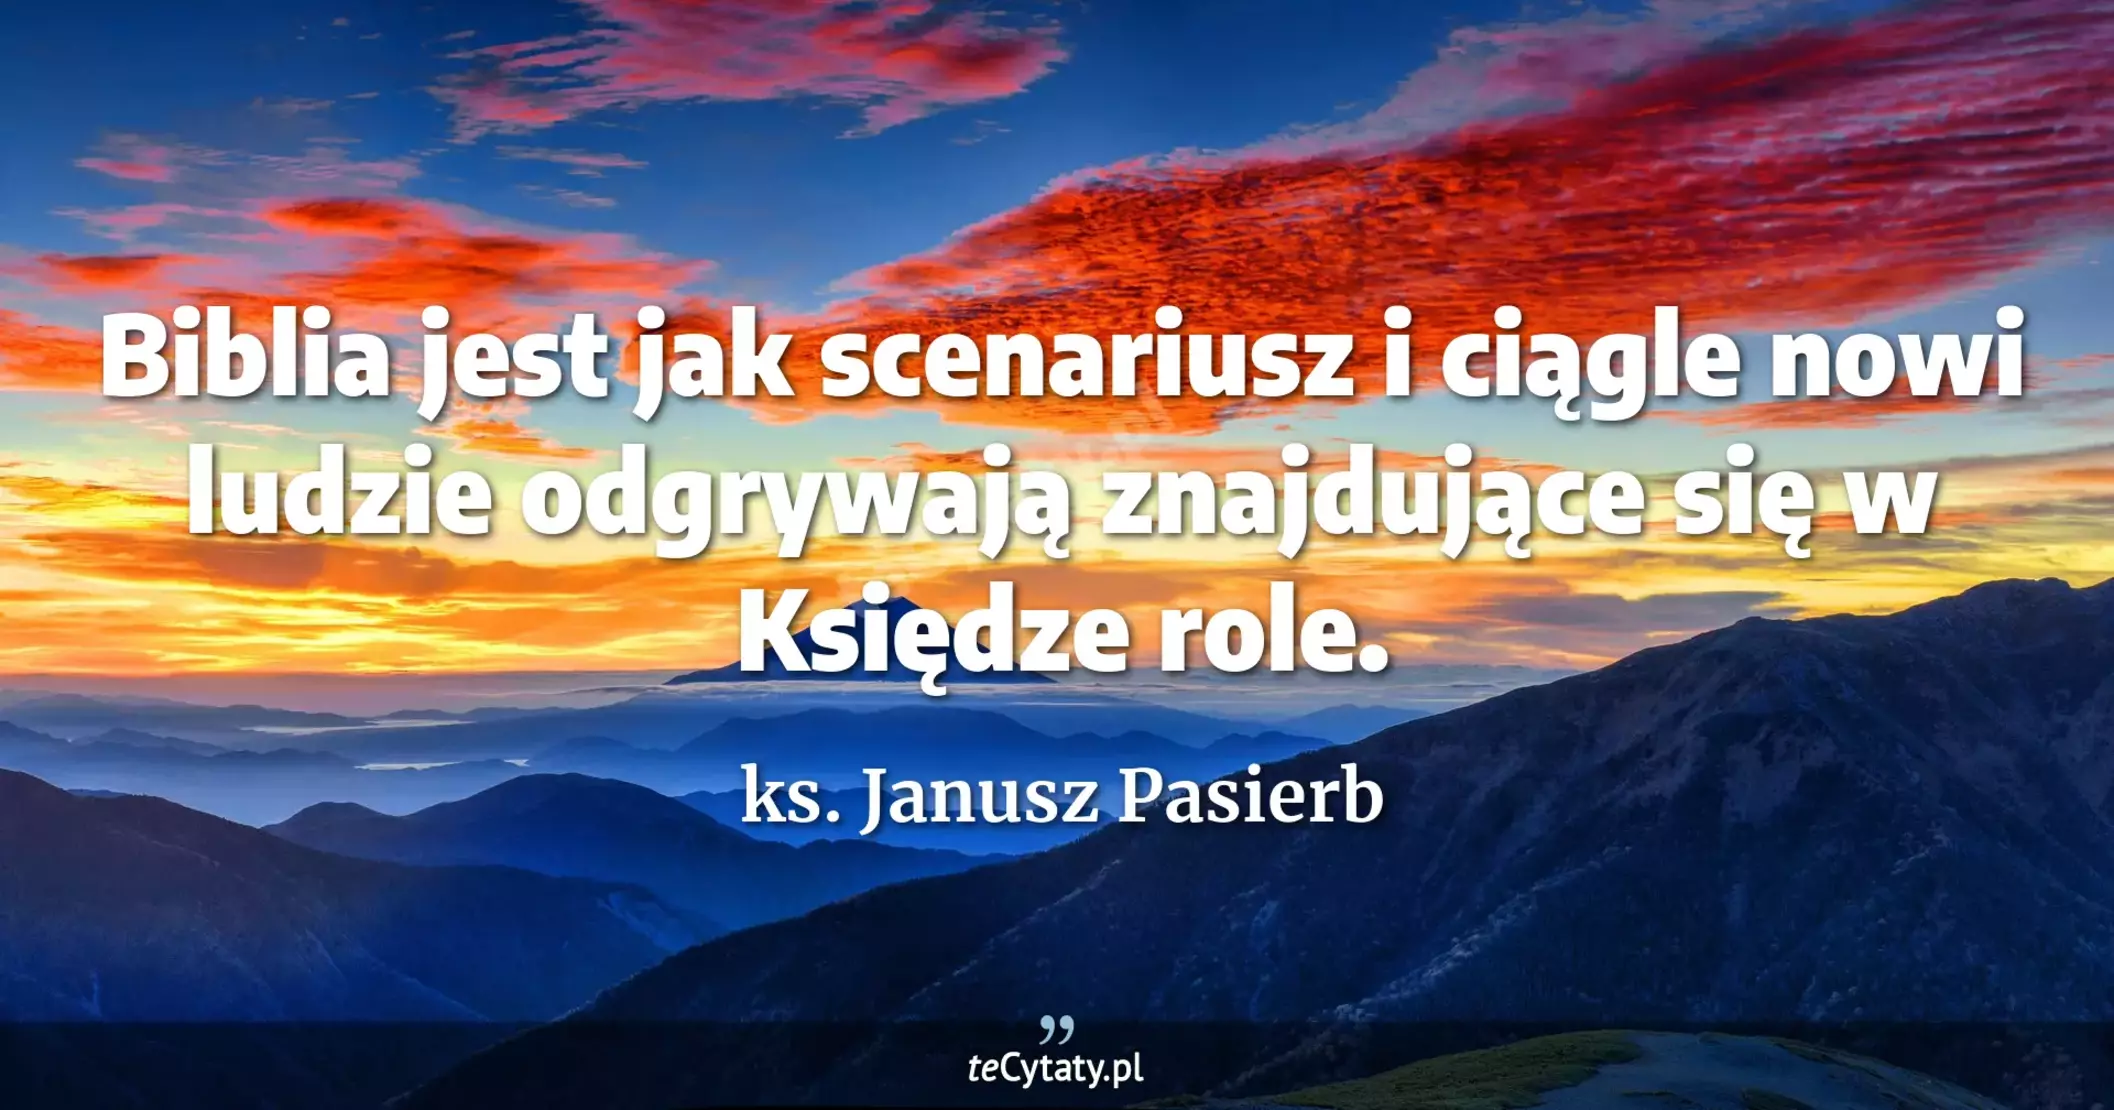 Biblia jest jak scenariusz i ciągle nowi ludzie odgrywają znajdujące się w Księdze role. - ks. Janusz Pasierb